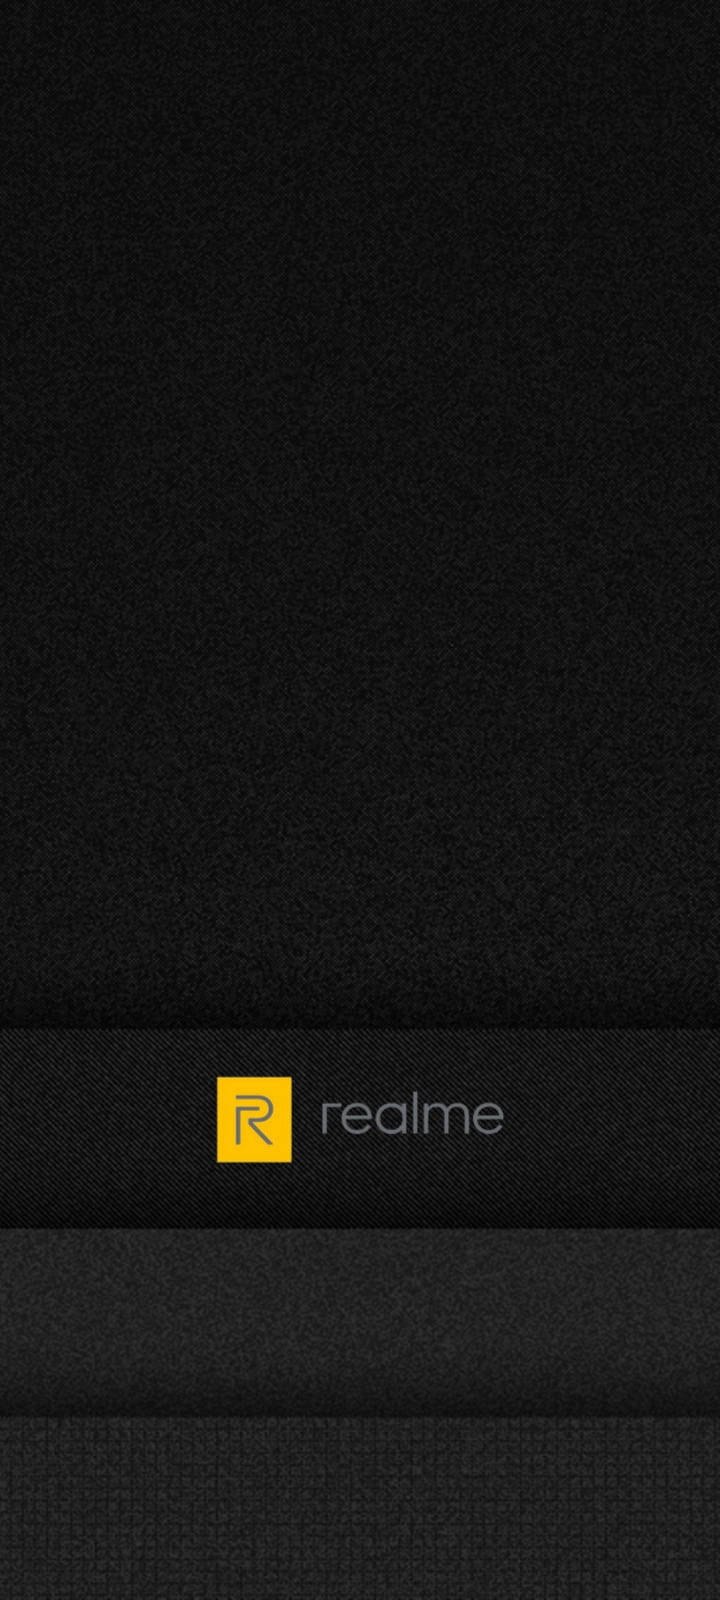 Realme Logo Sort Og Grå Tapet. Wallpaper